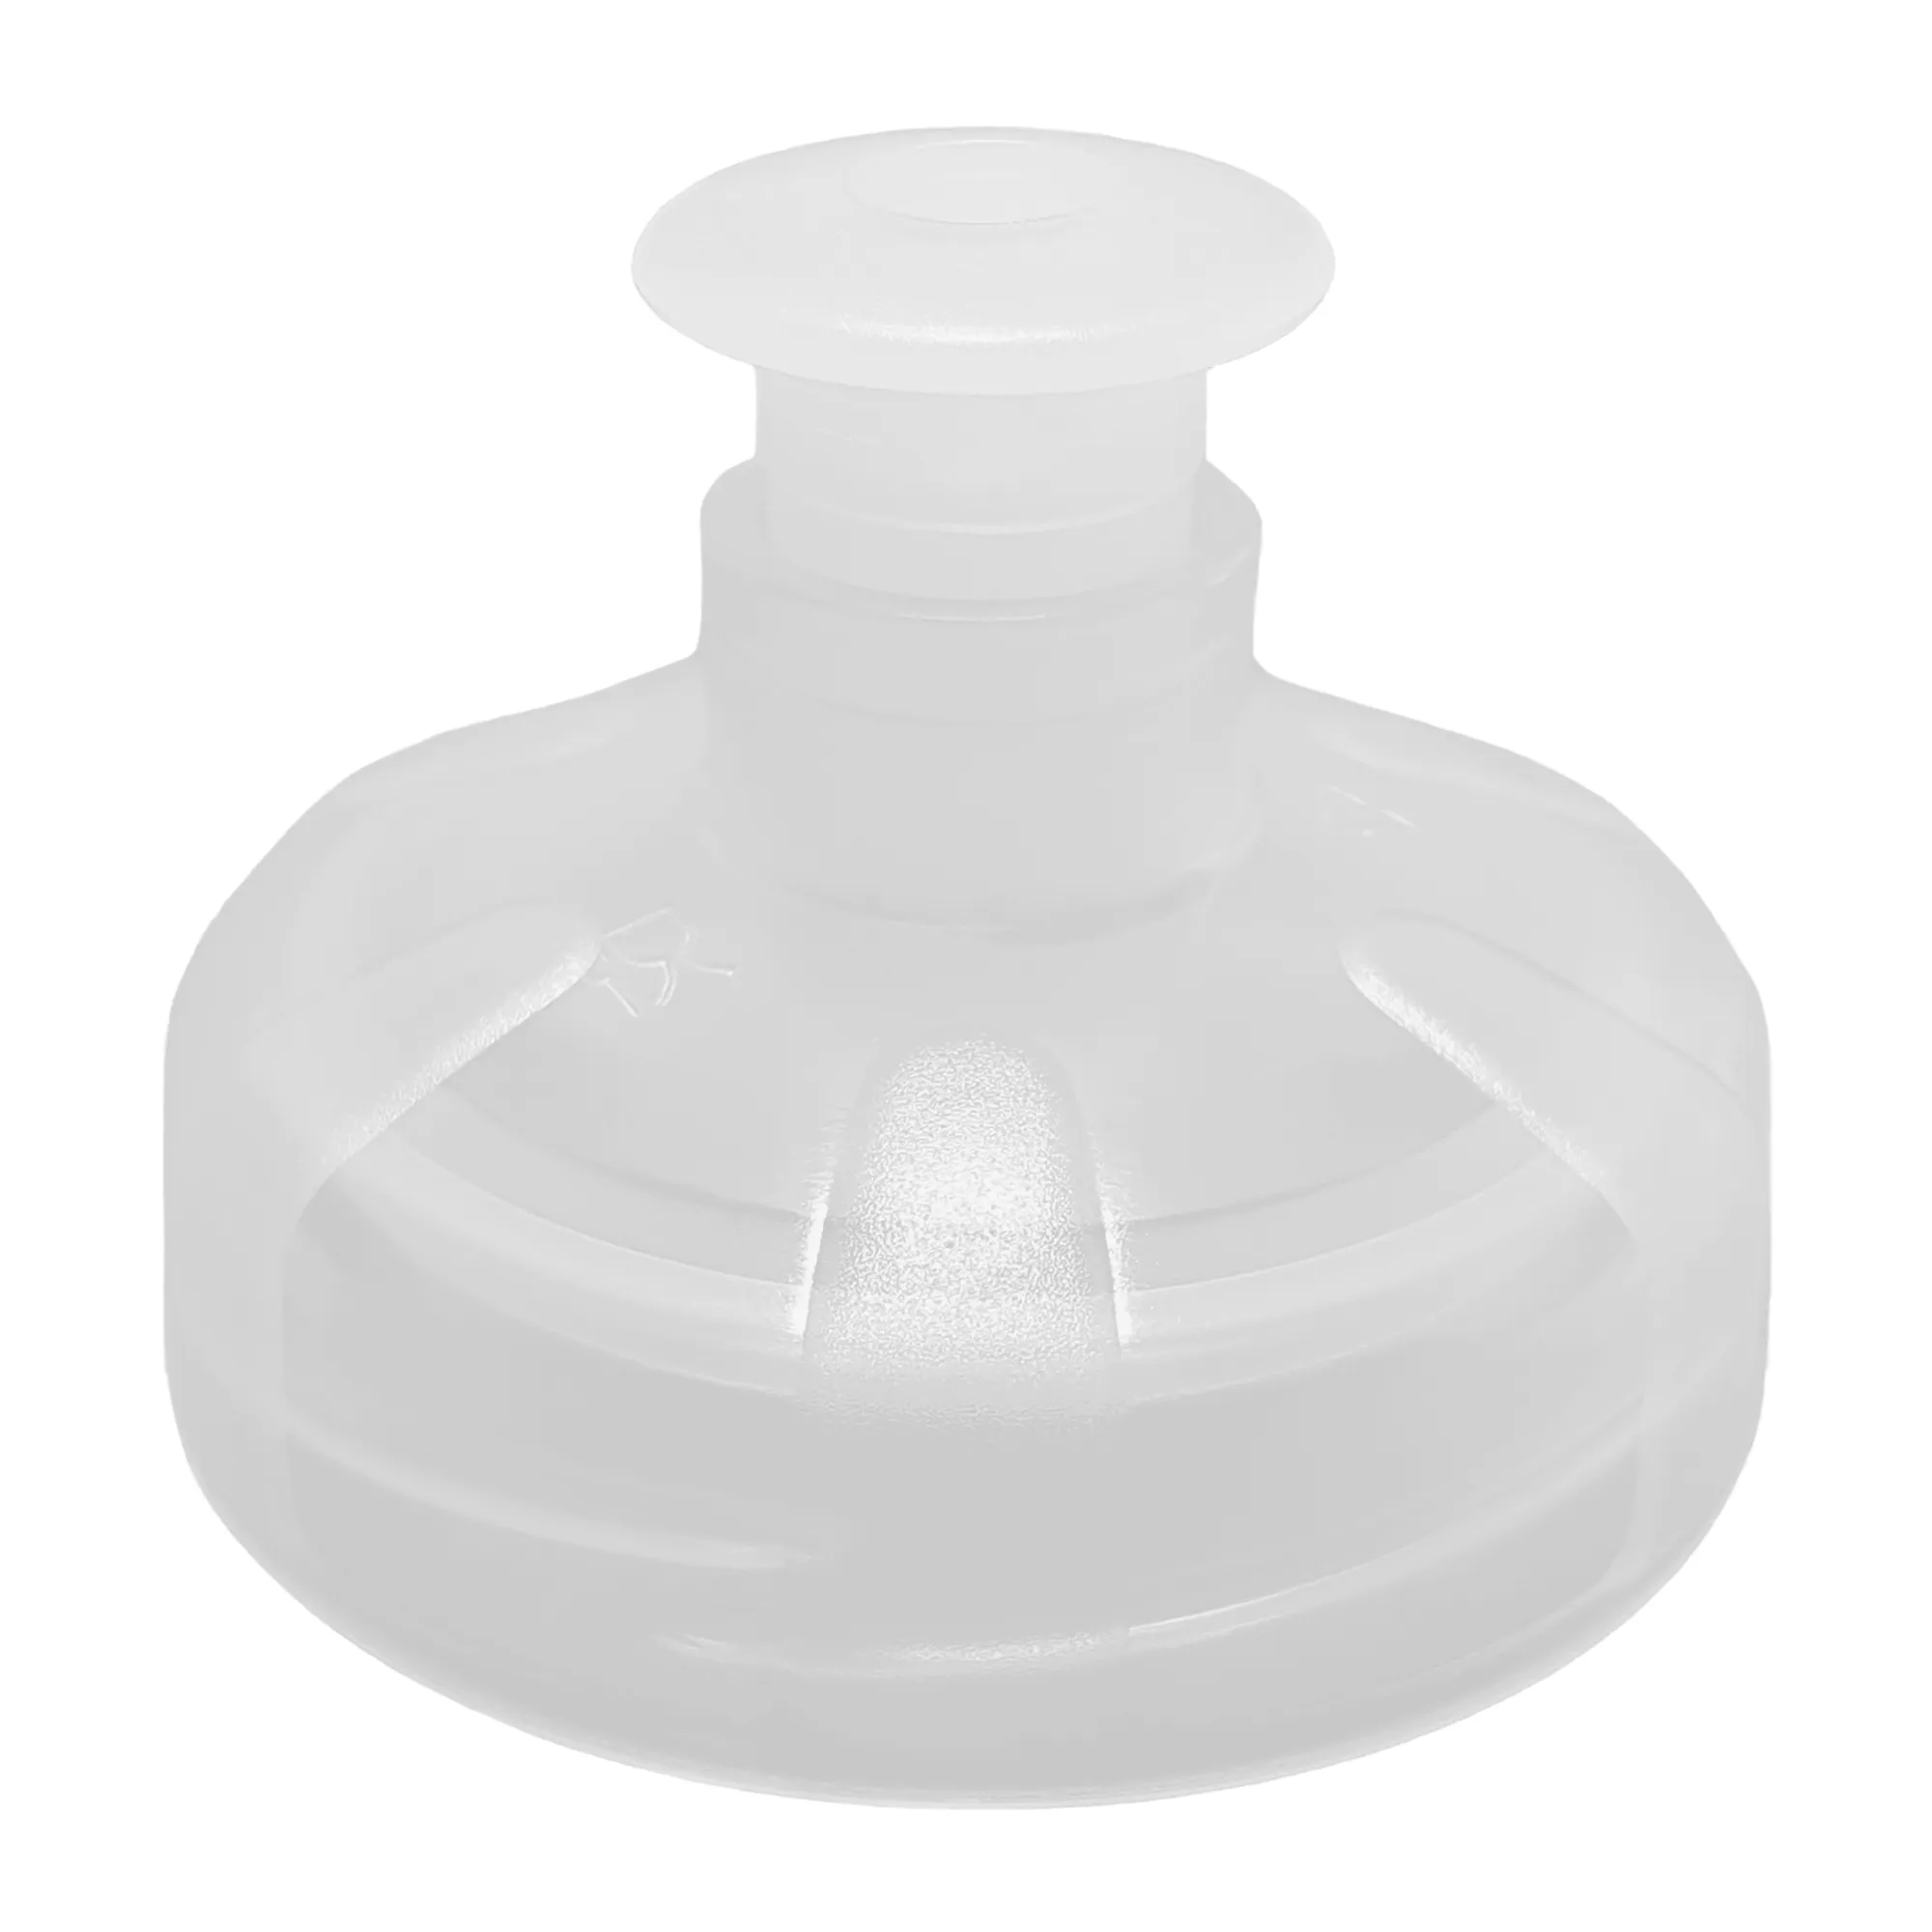 Zu sehen ist ein transparenter Push Pull Sport Deckel für die Acala Tritan Trinkflaschen Grip und 8 Kant vor weißem Hintergrund. Der kleine Verschluss, der nach oben gezogen wird ist geöffnet.